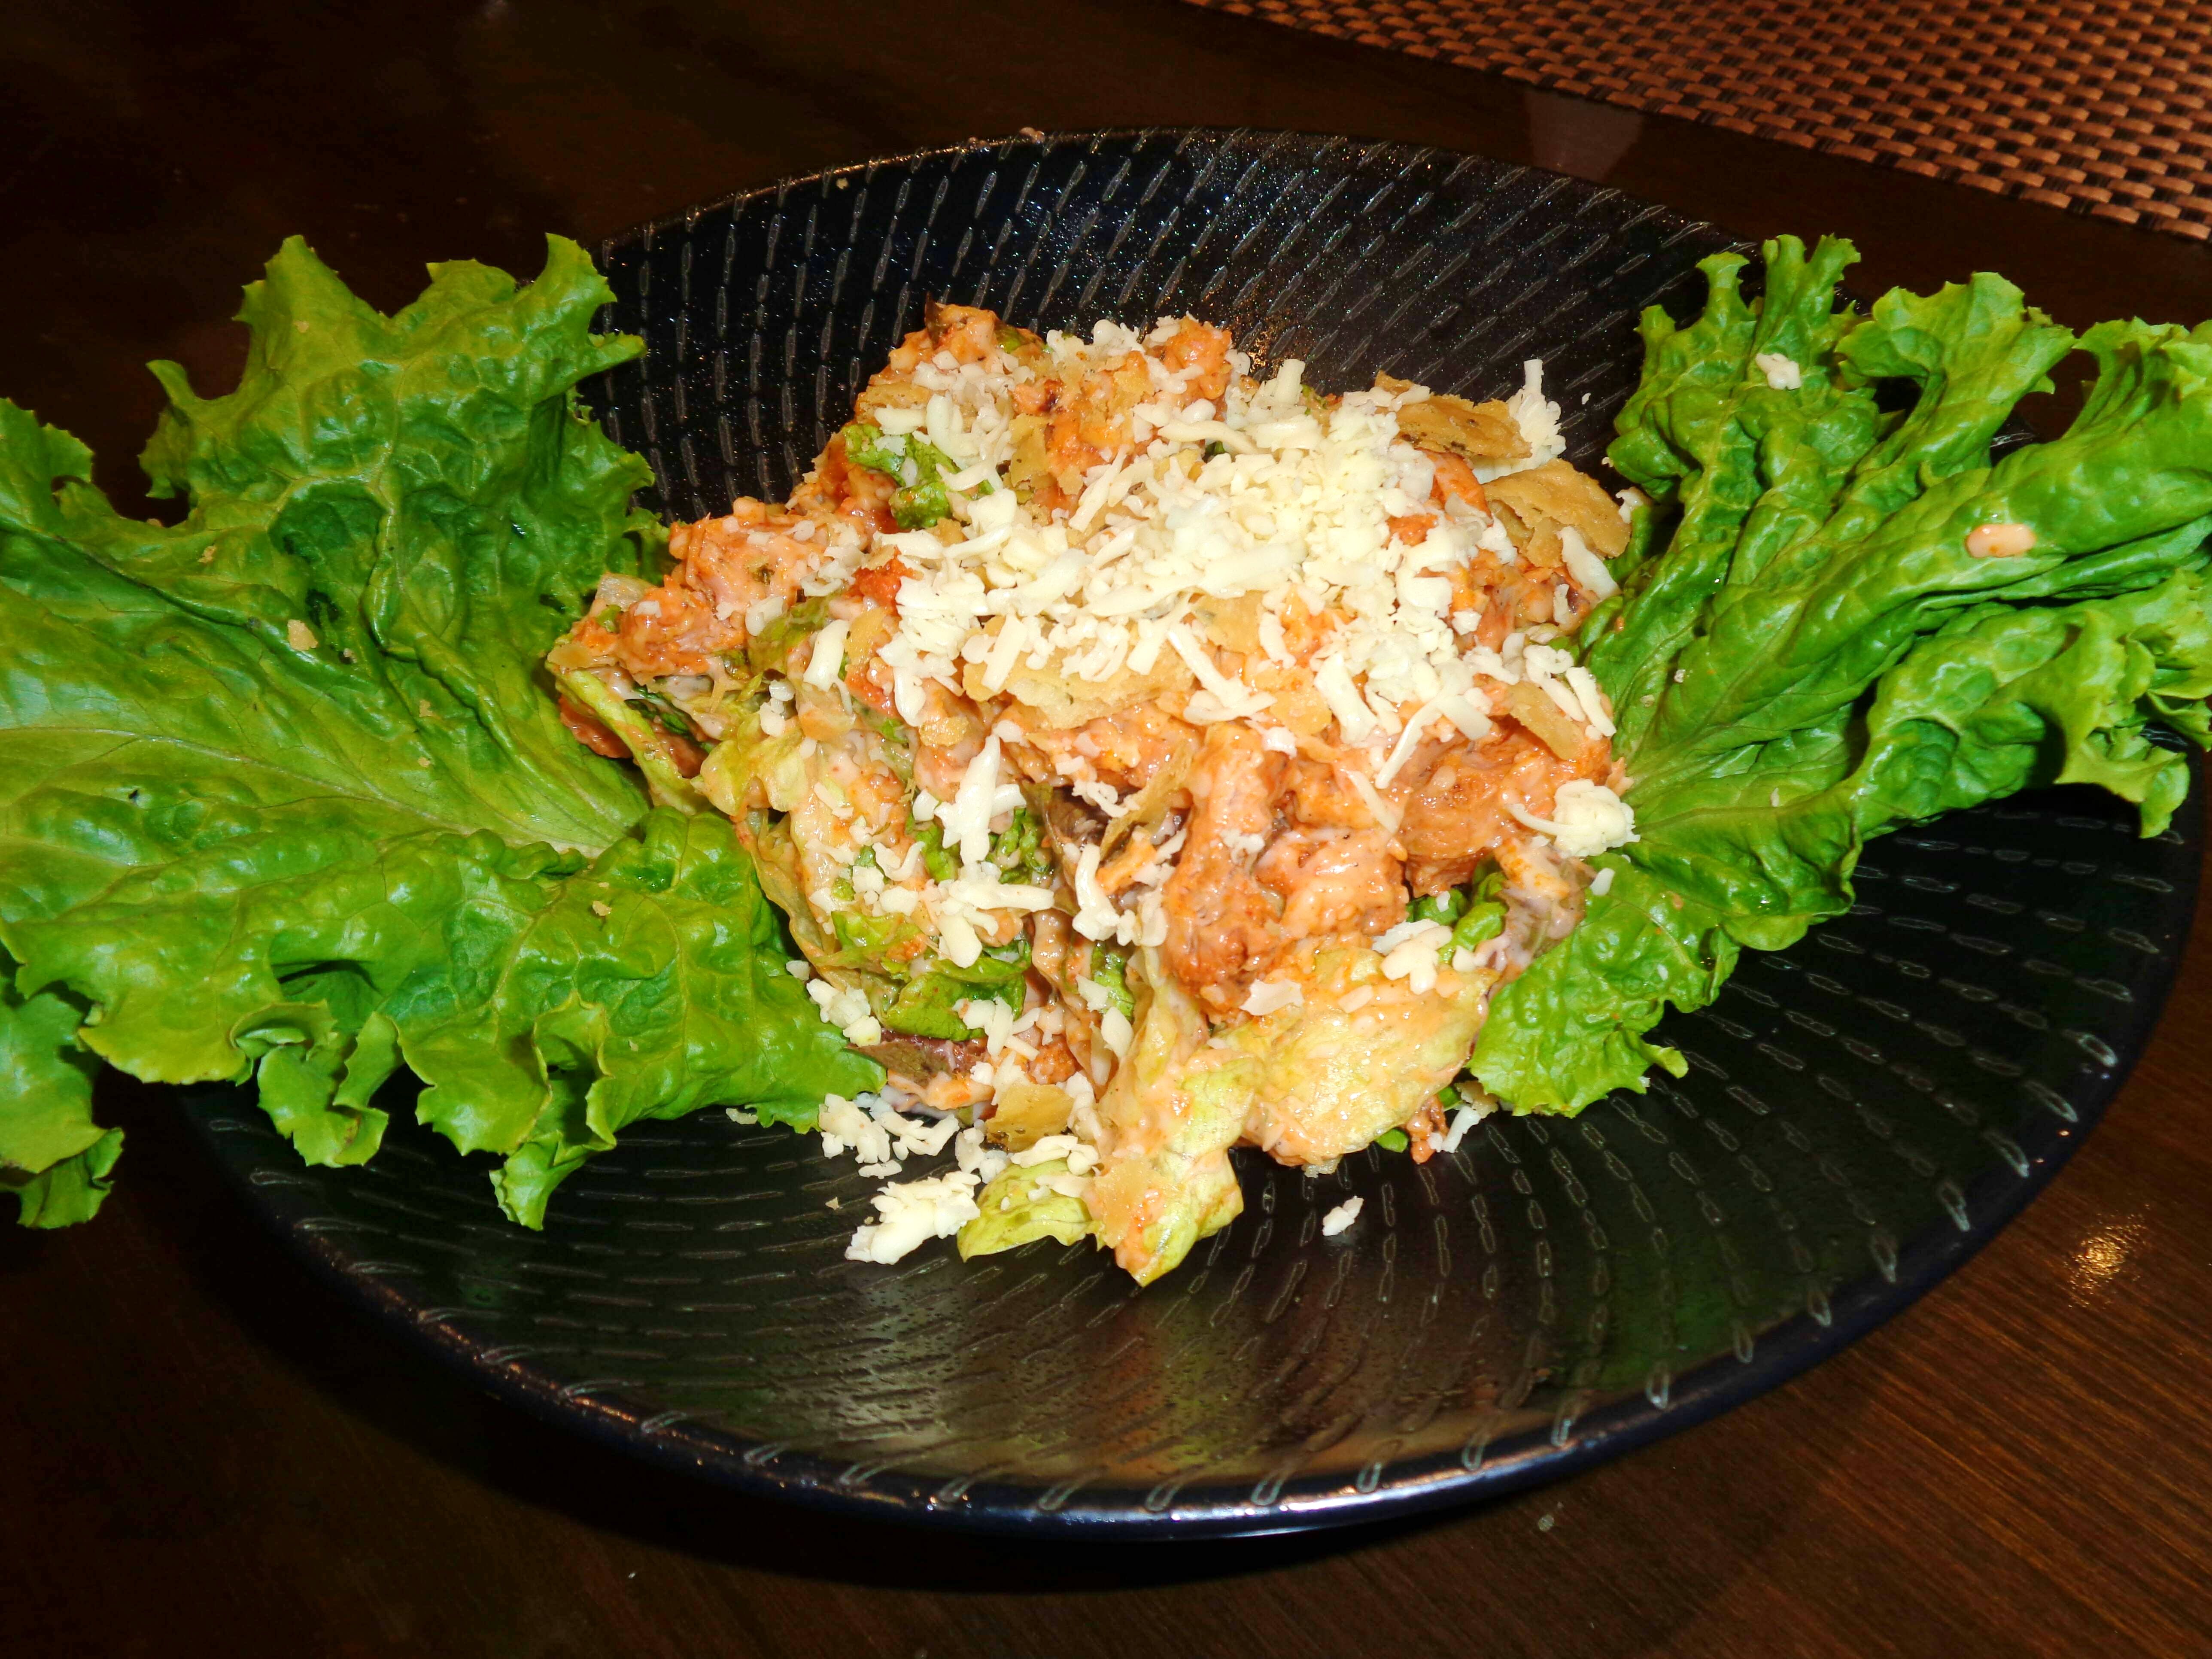 Dish,Food,Cuisine,Ingredient,Leaf vegetable,Thai fried rice,Produce,Staple food,Vegetable,Salad